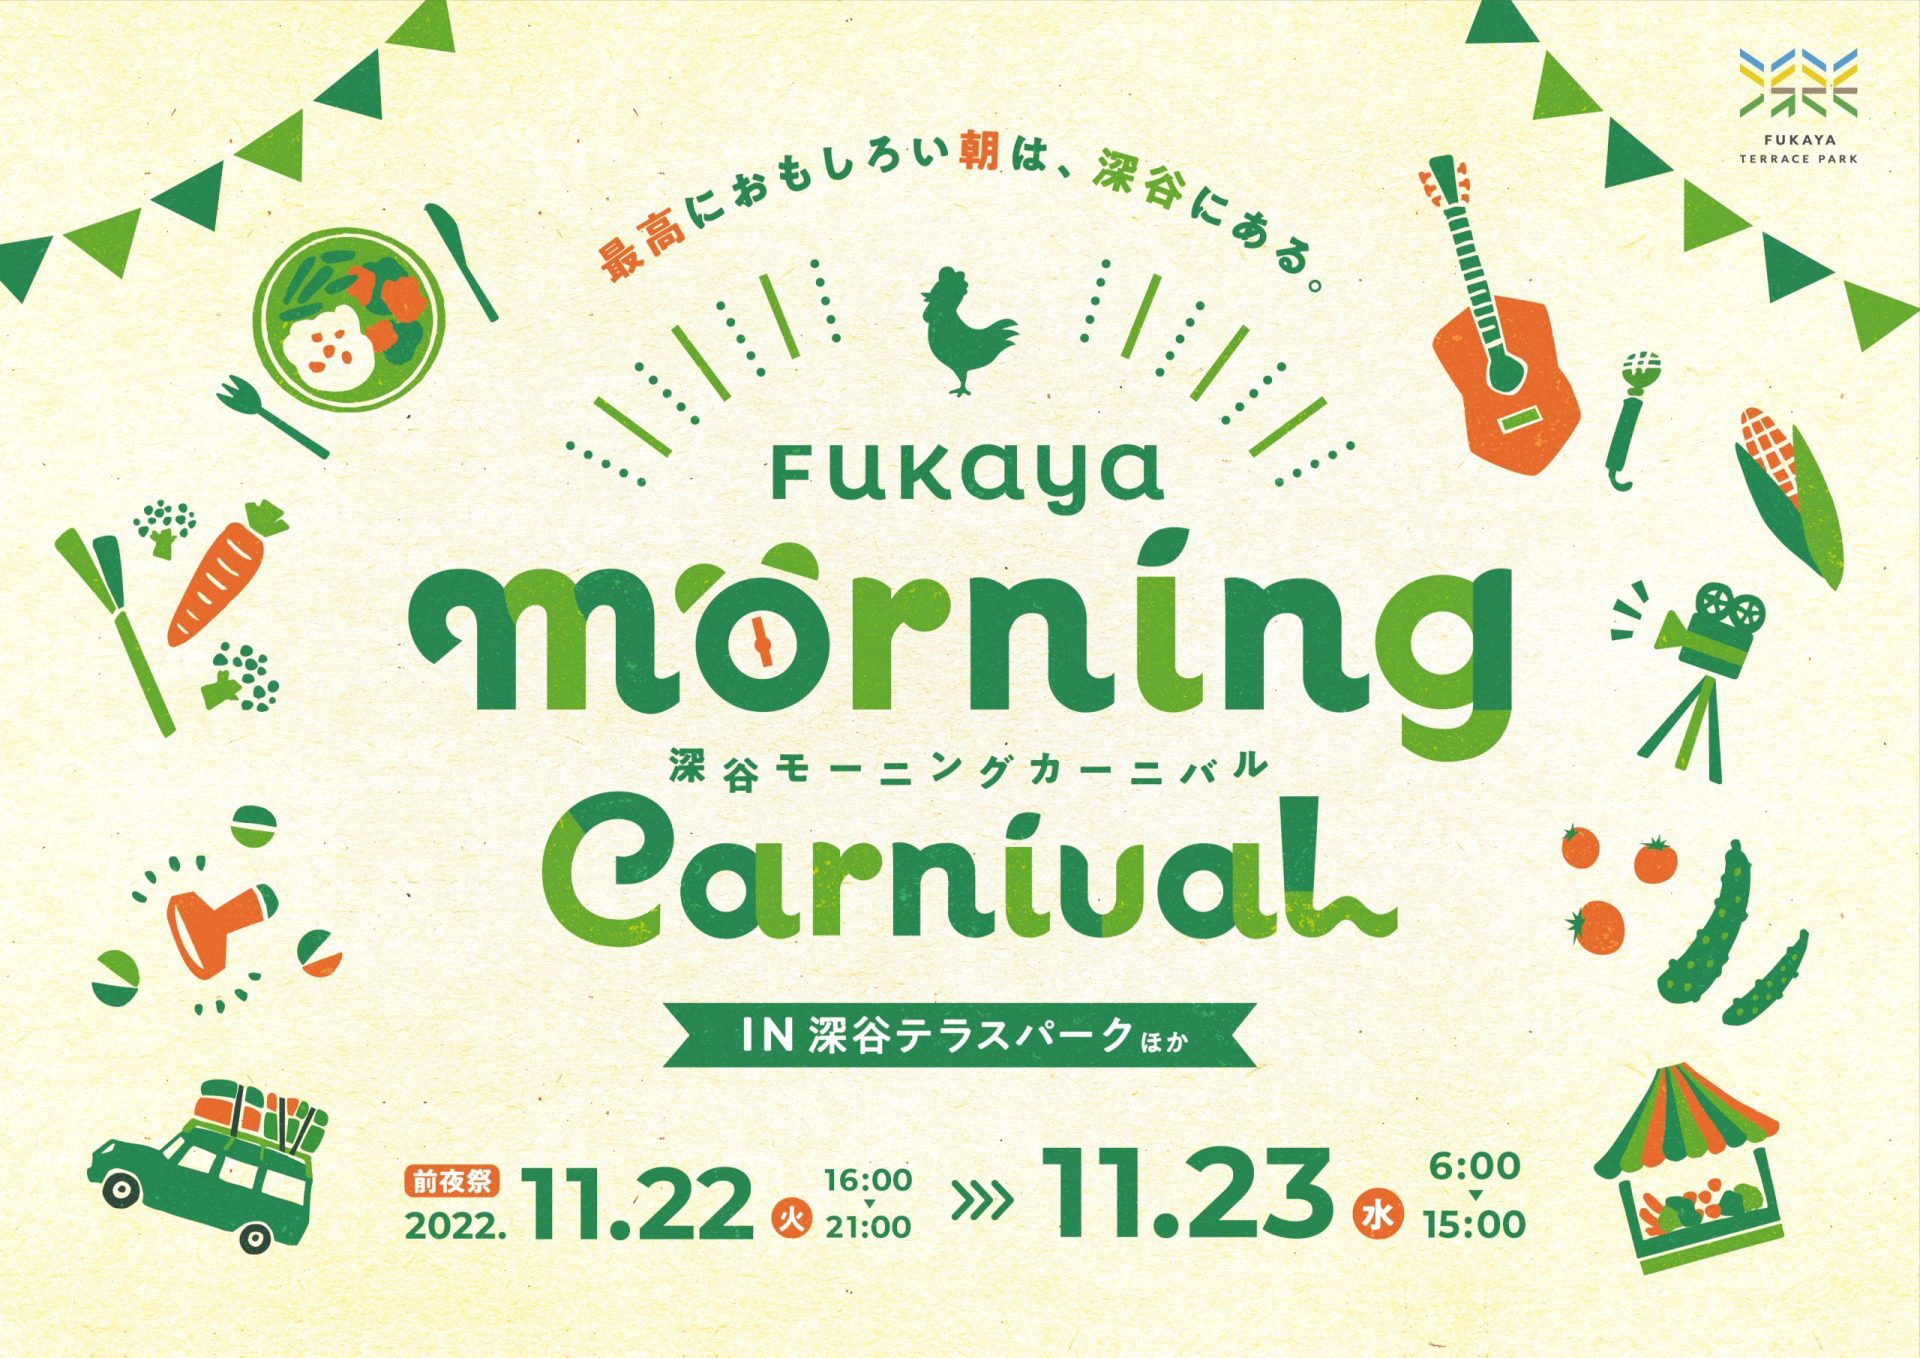 感謝。FUKAYA ”Good” morning carnival.